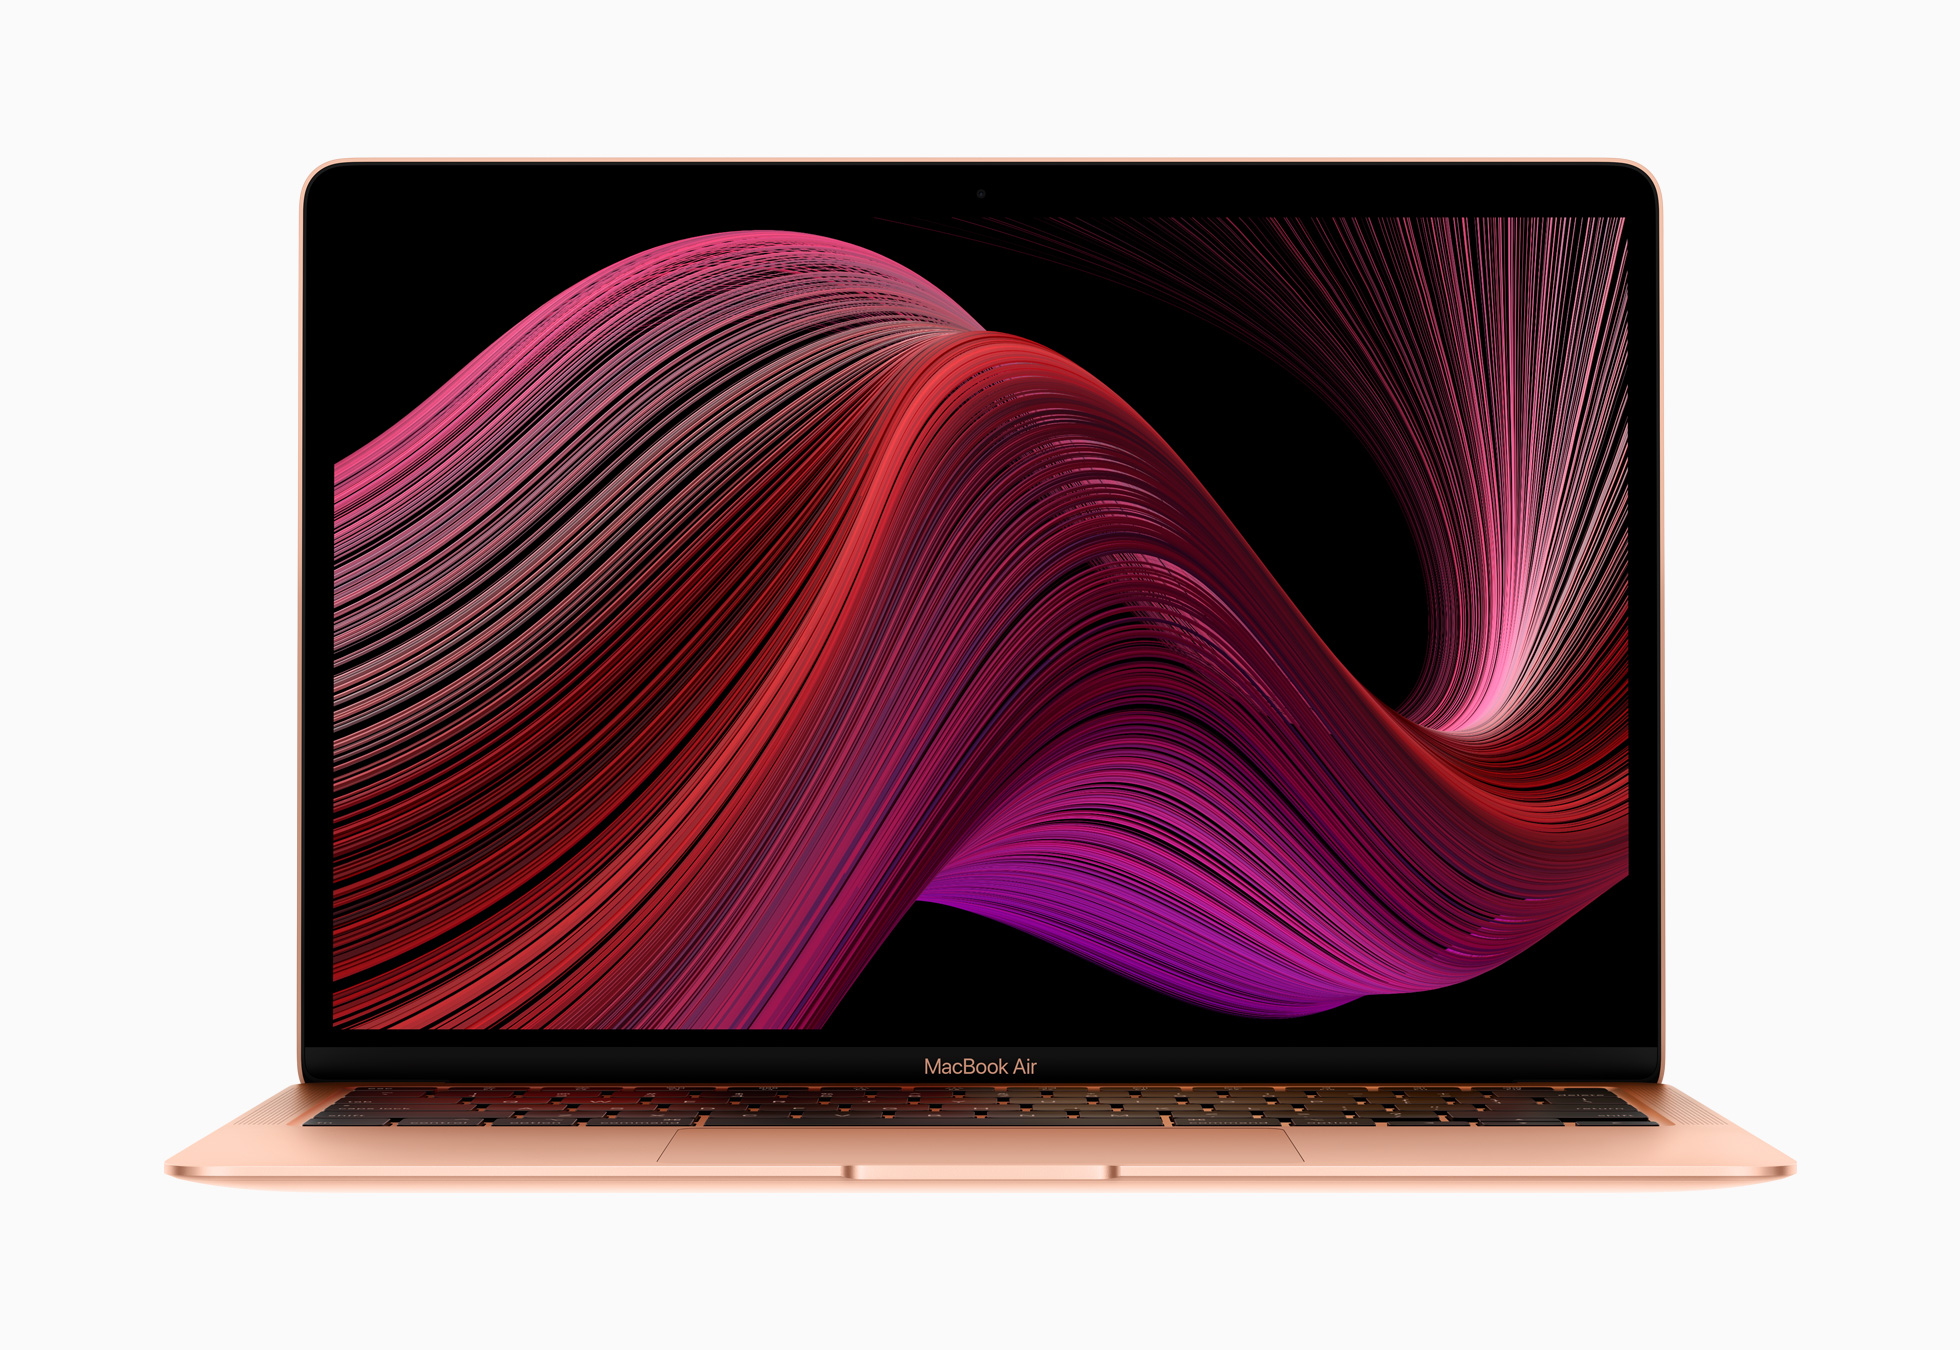 MacBook Air 2020 cấu hình tầm trung mạnh mẽ hơn cả các mẫu 2018 và 2019